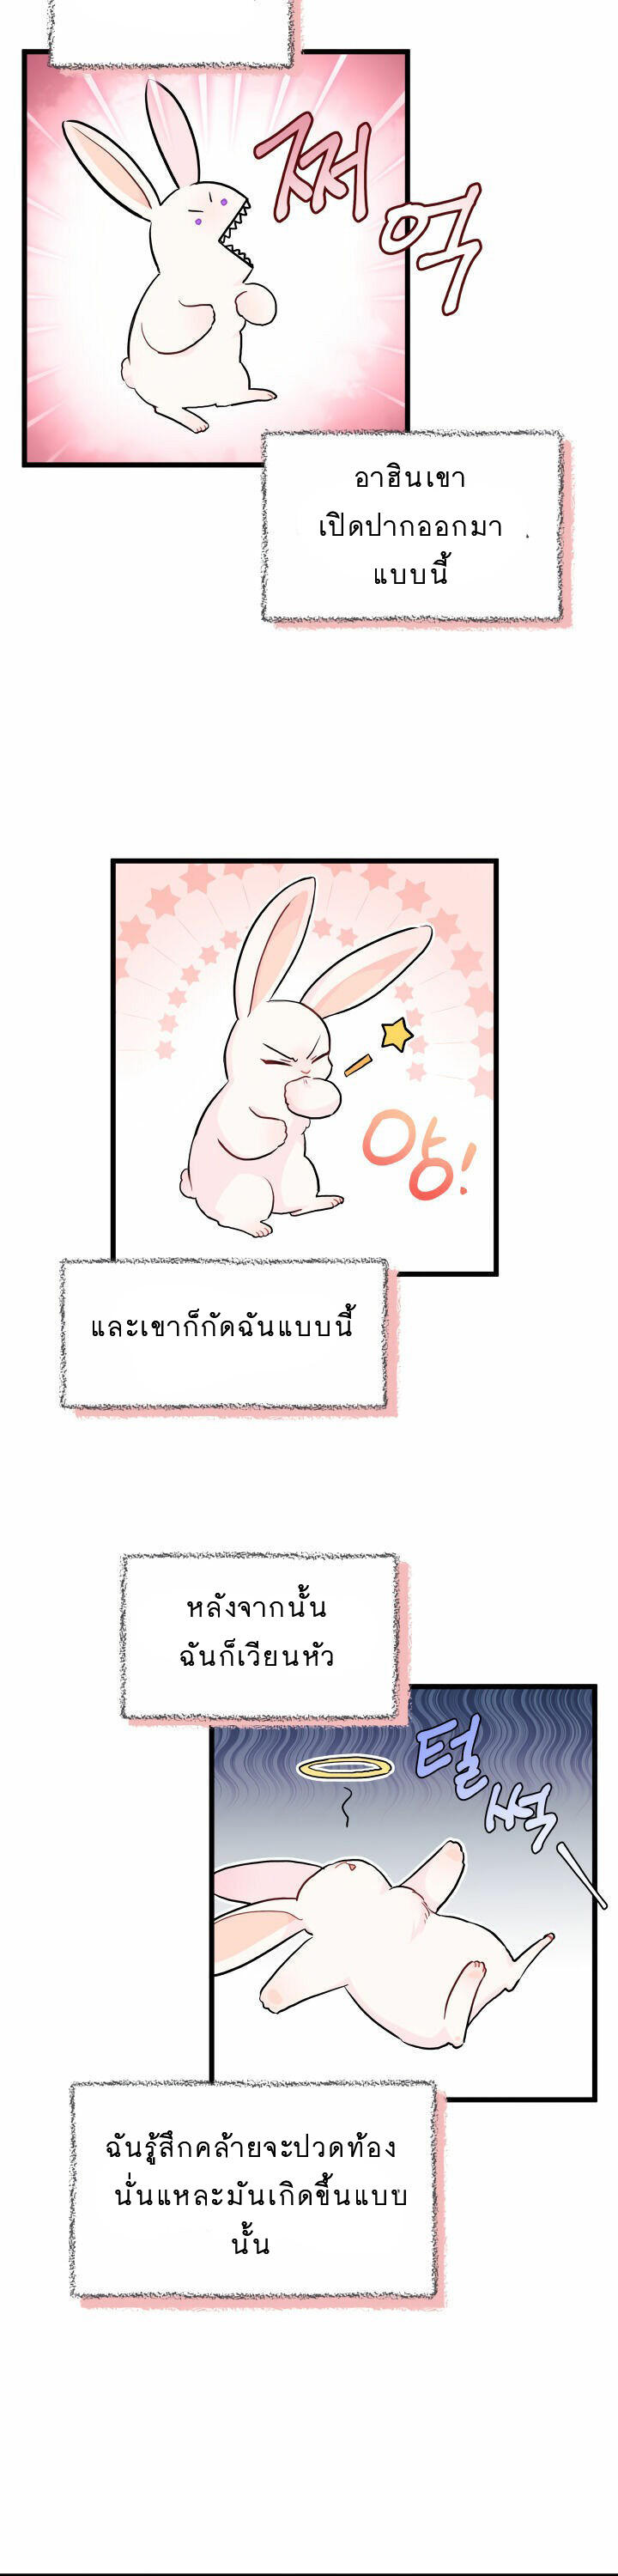 rabbit11 39